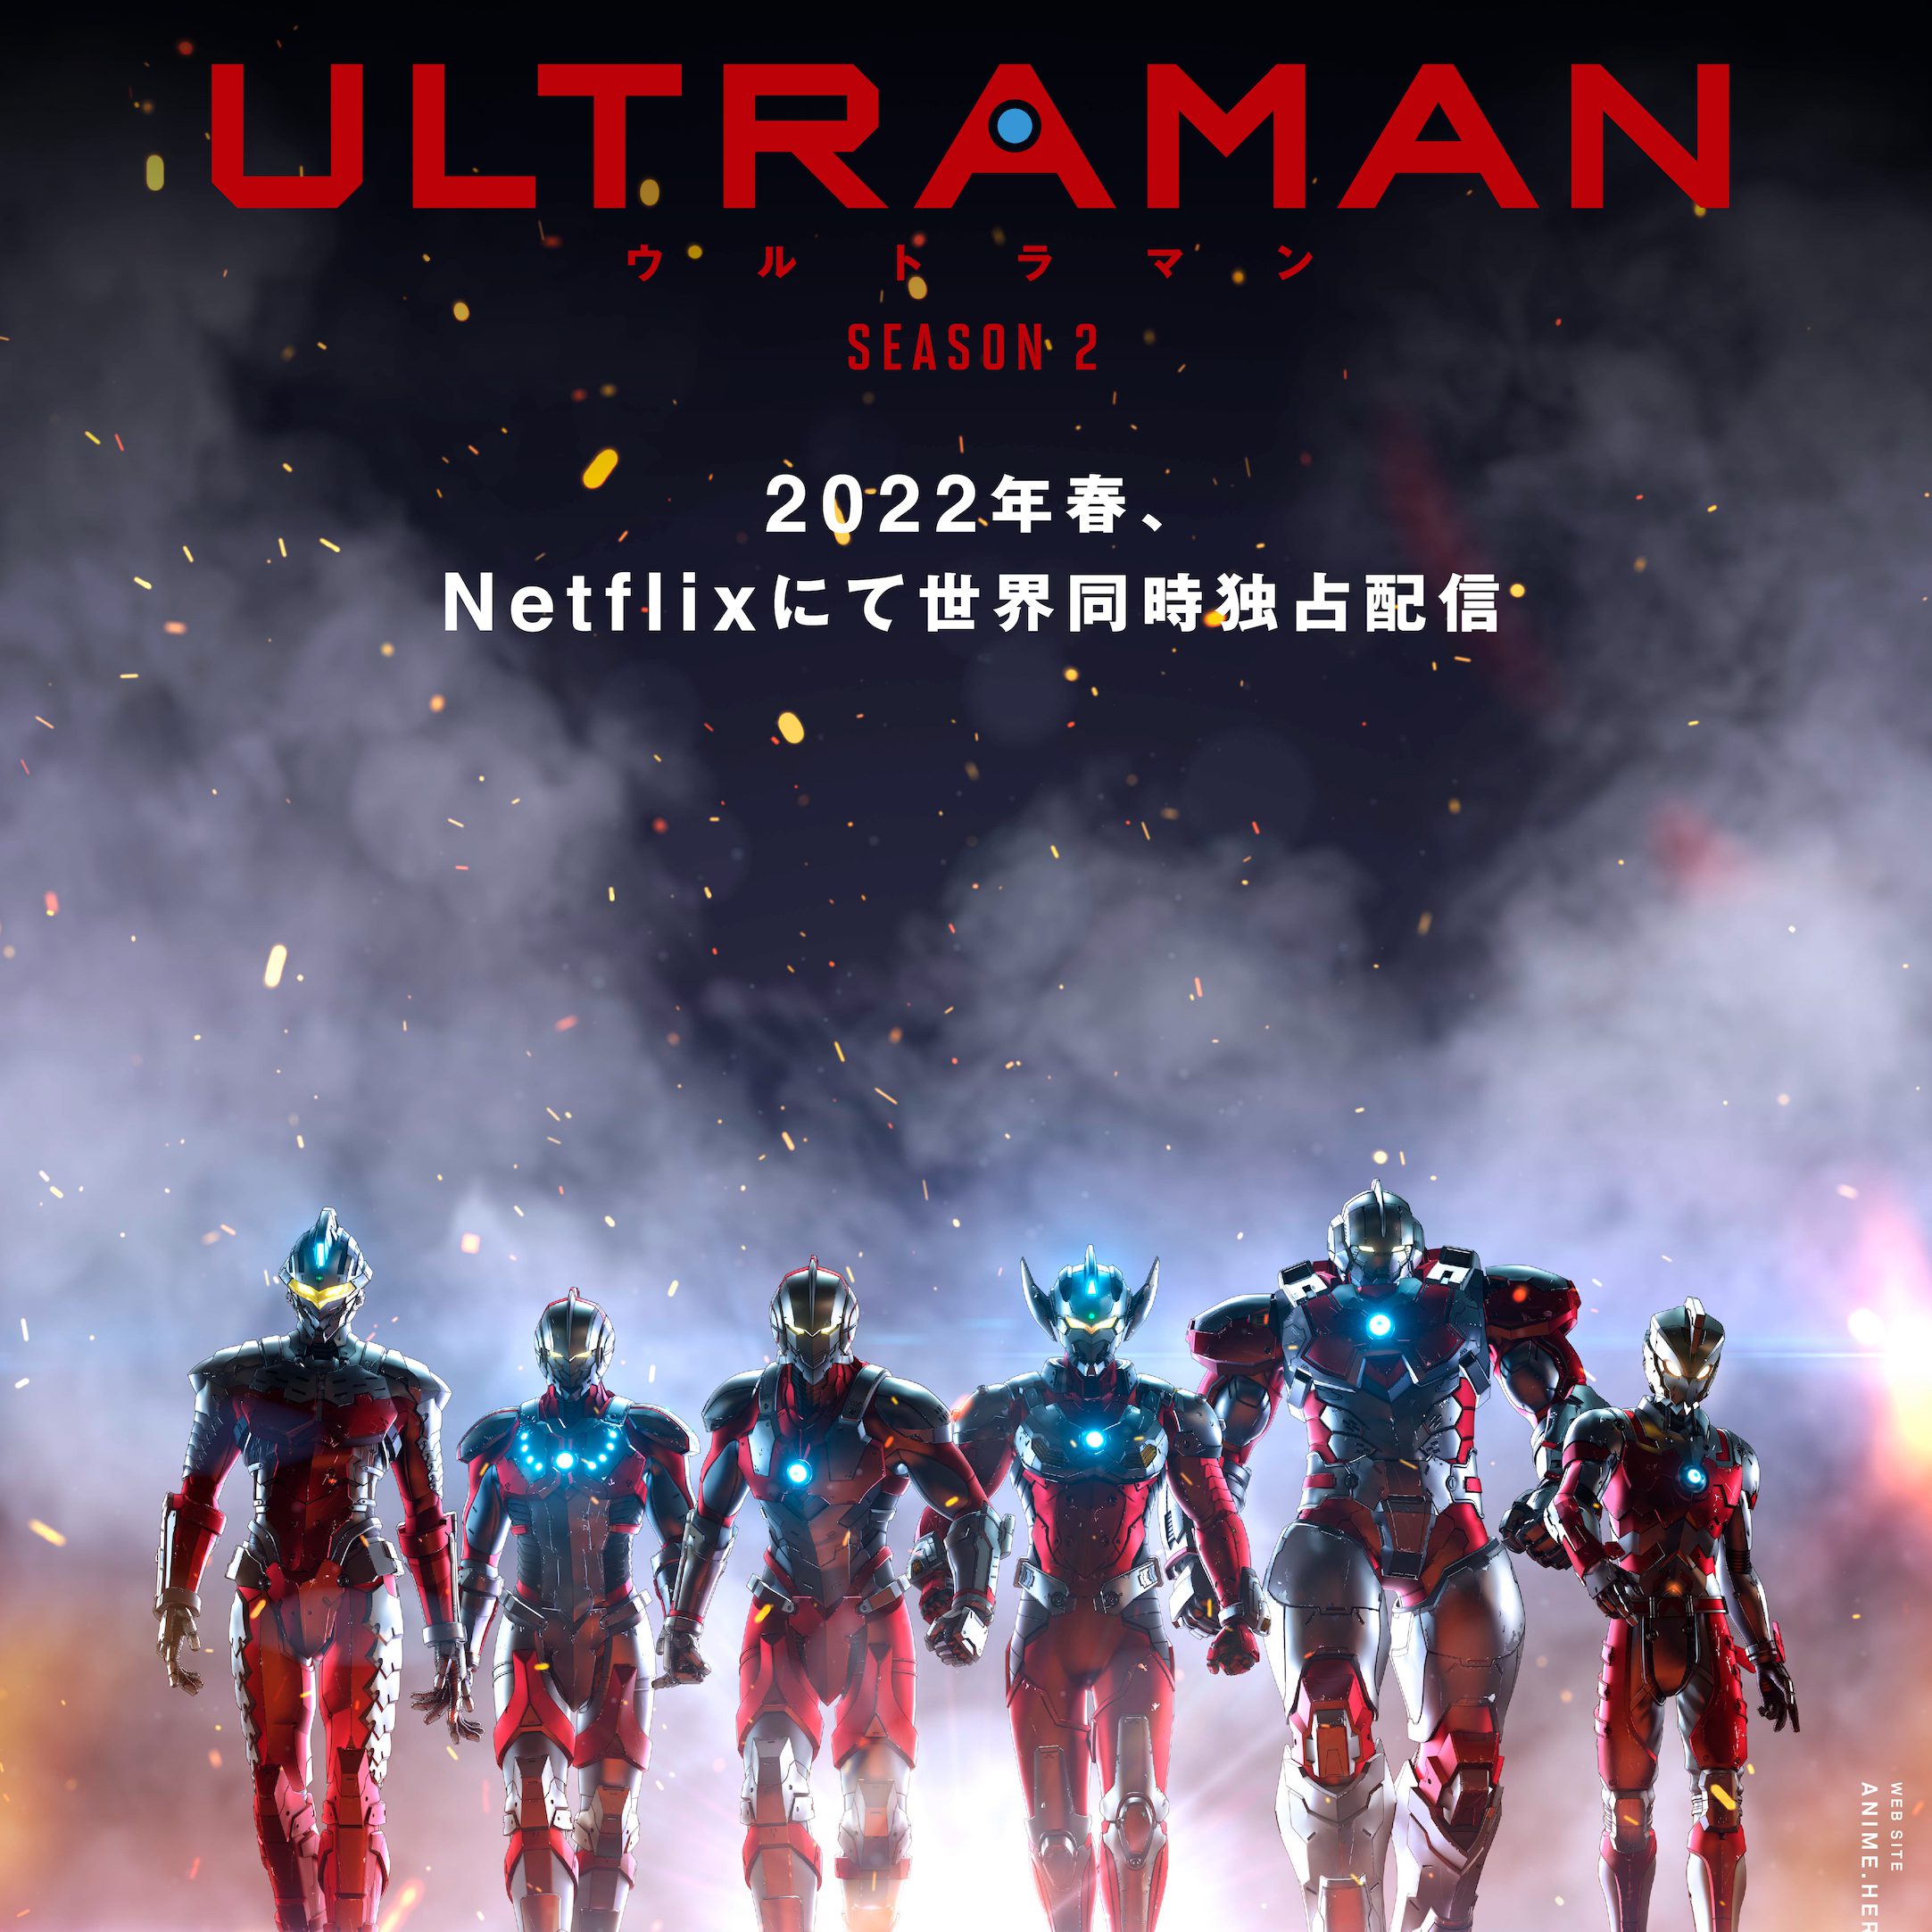 Ultraman: Rising Plot, Release Date, Teaser For New Animated Film - Netflix  Tudum